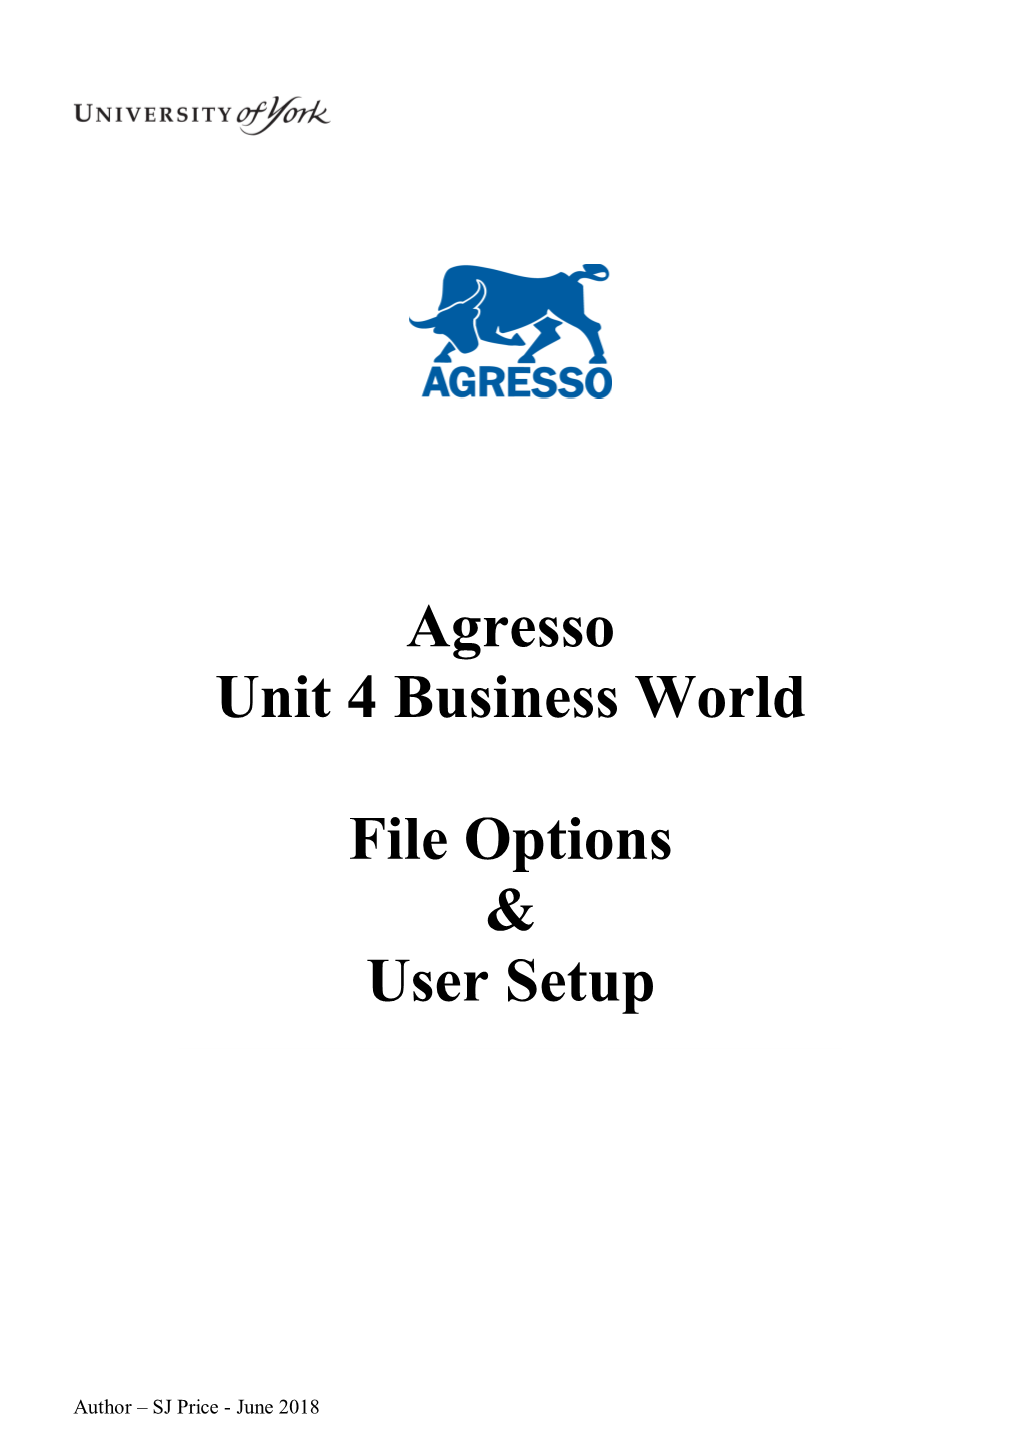 Agresso Unit 4 Business World File Options & User Setup